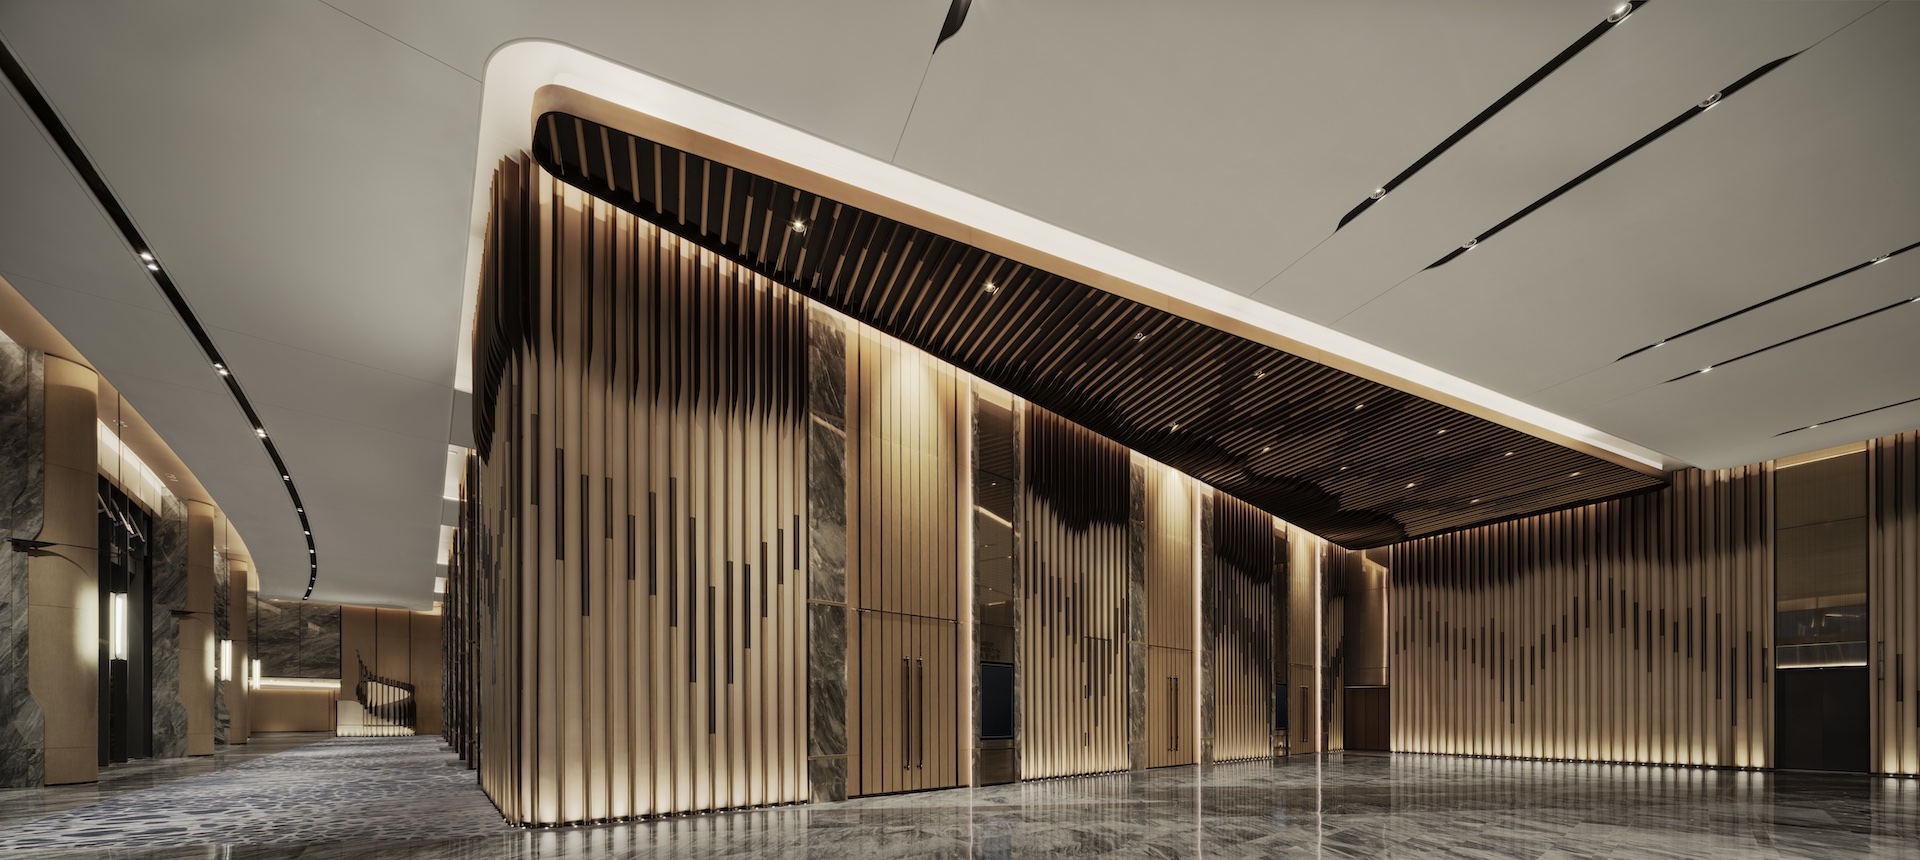 MUSE Design Winners - JW MARRIOTT HOTEL SHANGHAI FENGXIAN